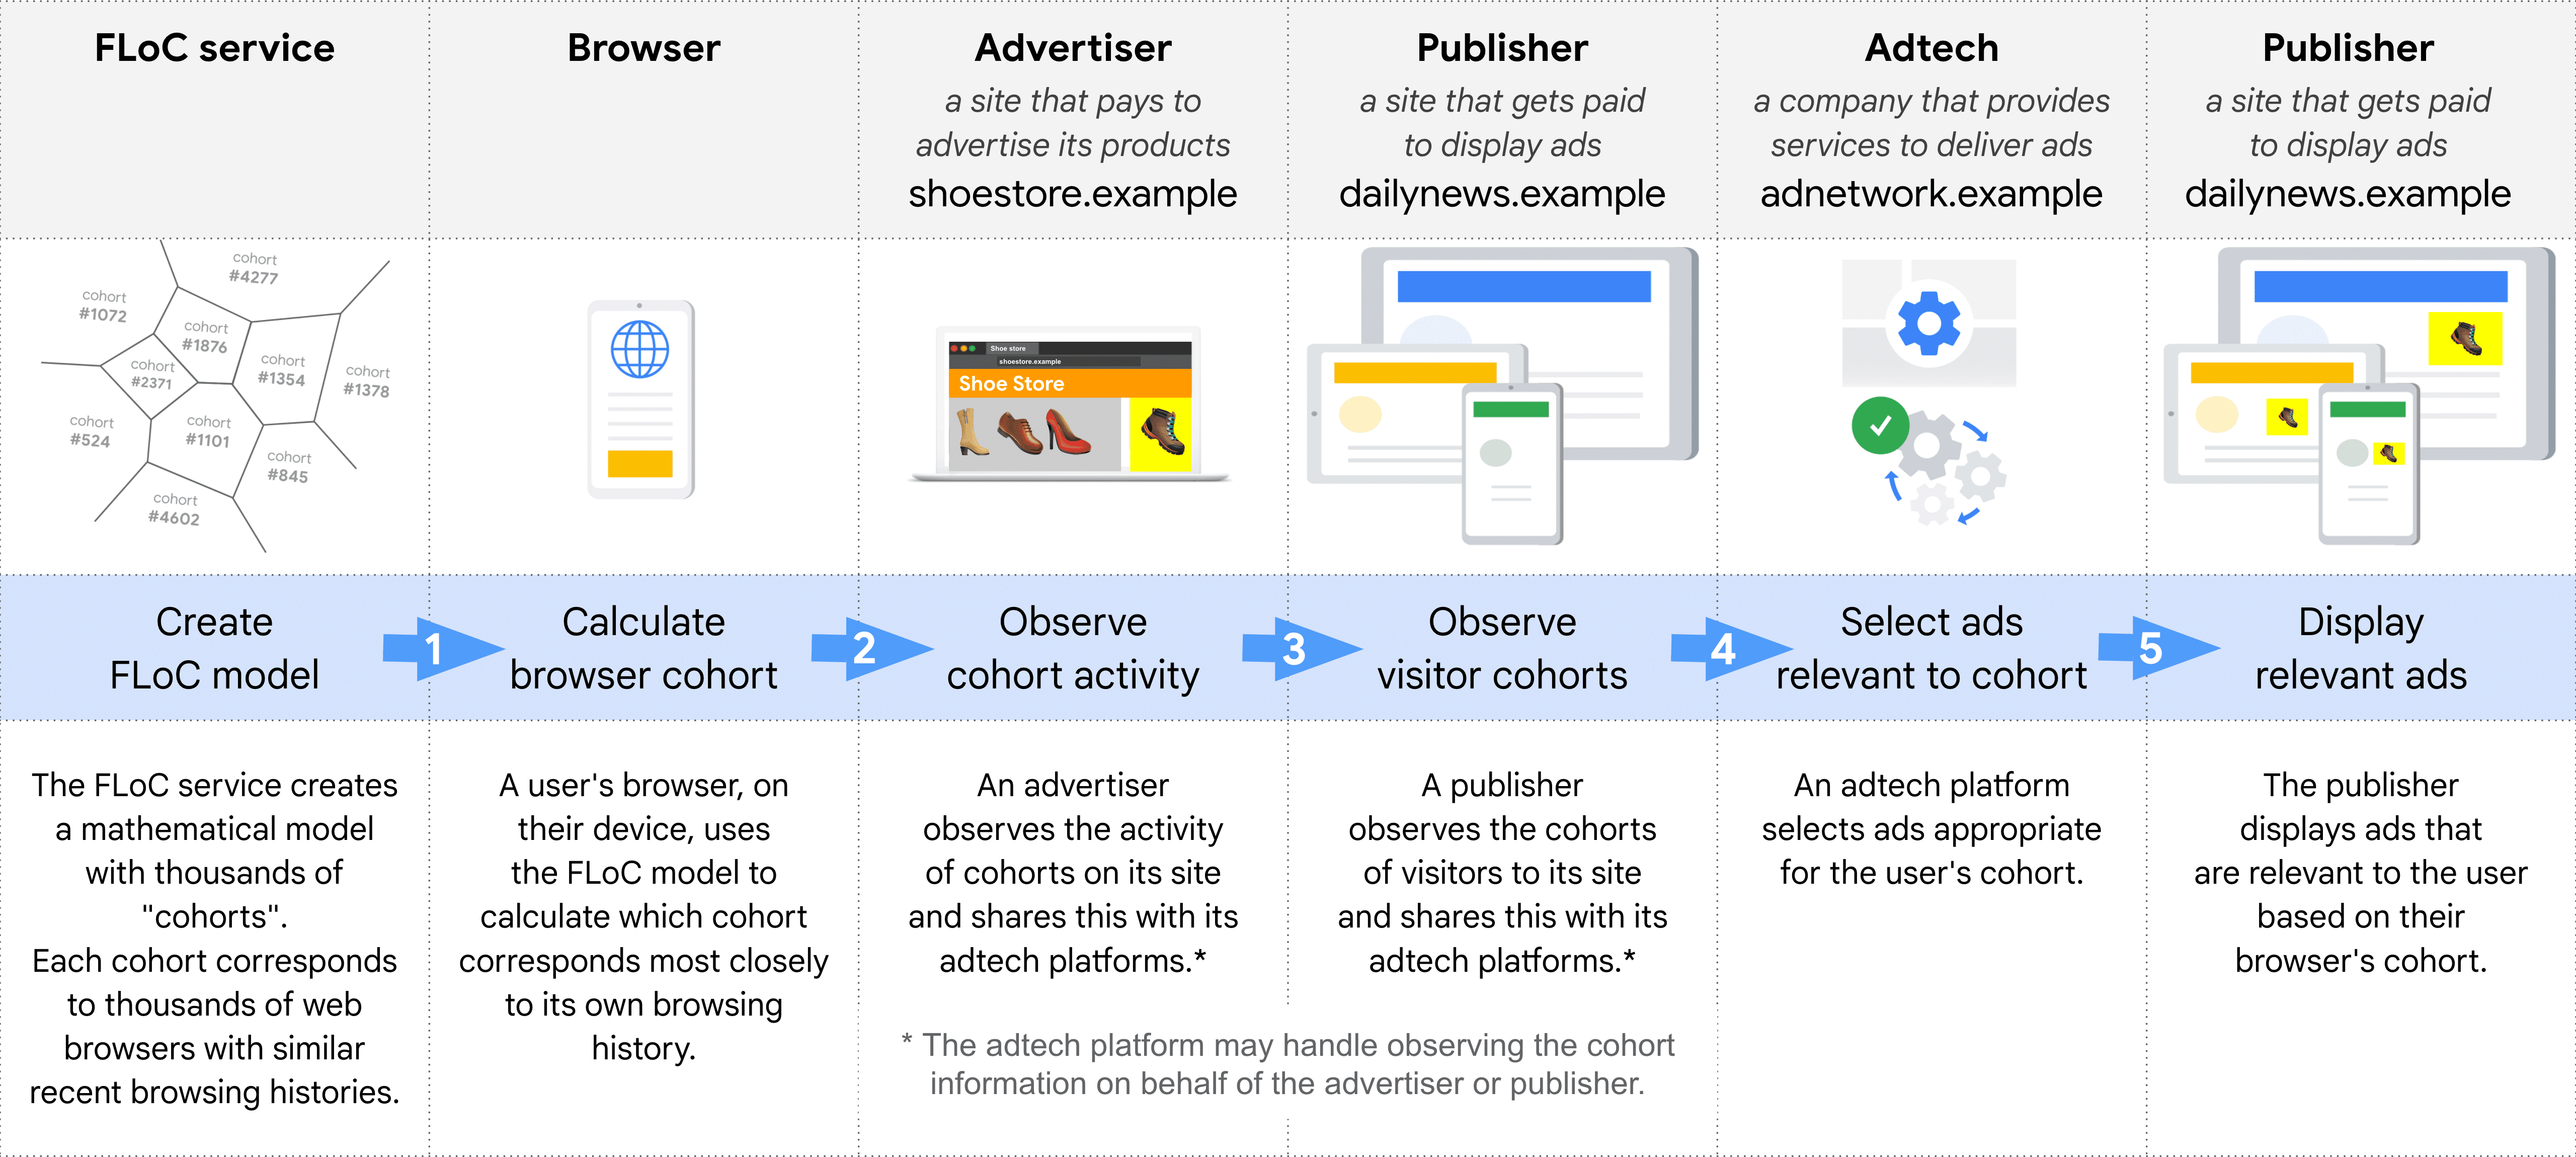 该示意图逐步显示了使用 FLoC 选择和投放广告时的不同角色：FLoC 服务、浏览器、广告客户、发布商（用于观察同类群组）、广告技术平台、发布商（用于展示广告）